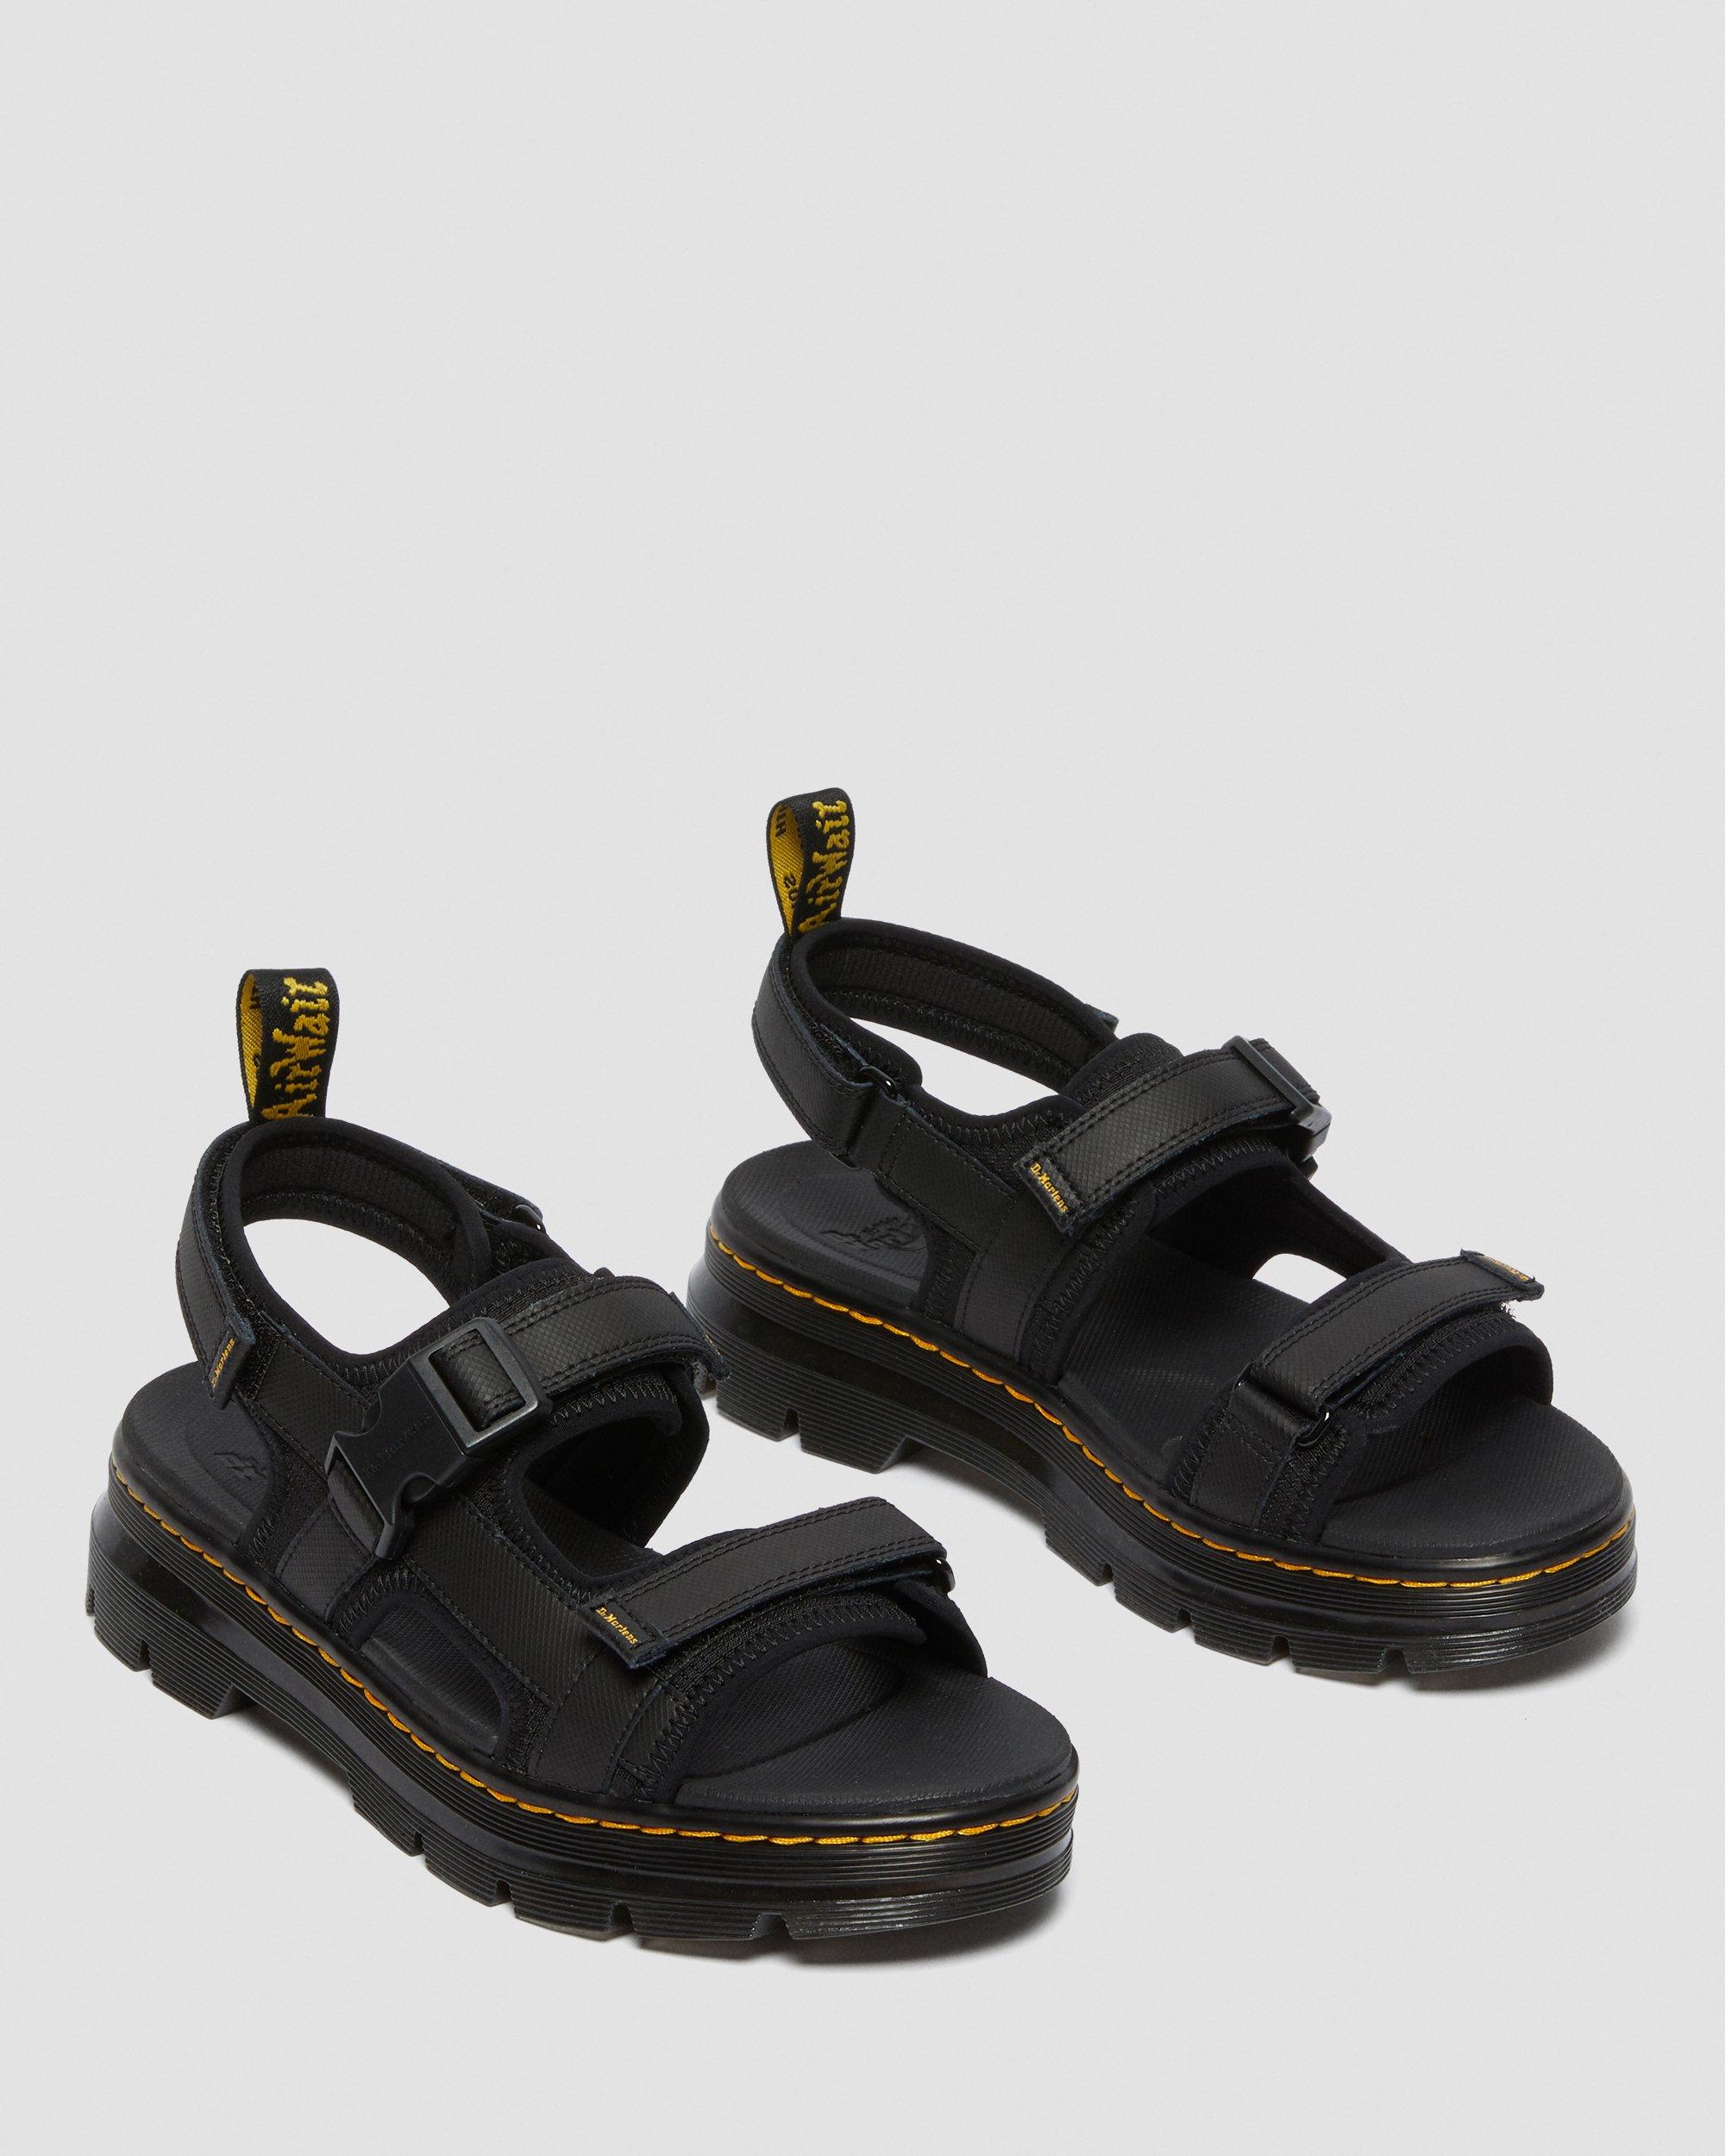 Forster Webbing Sandals in Black | Dr. Martens